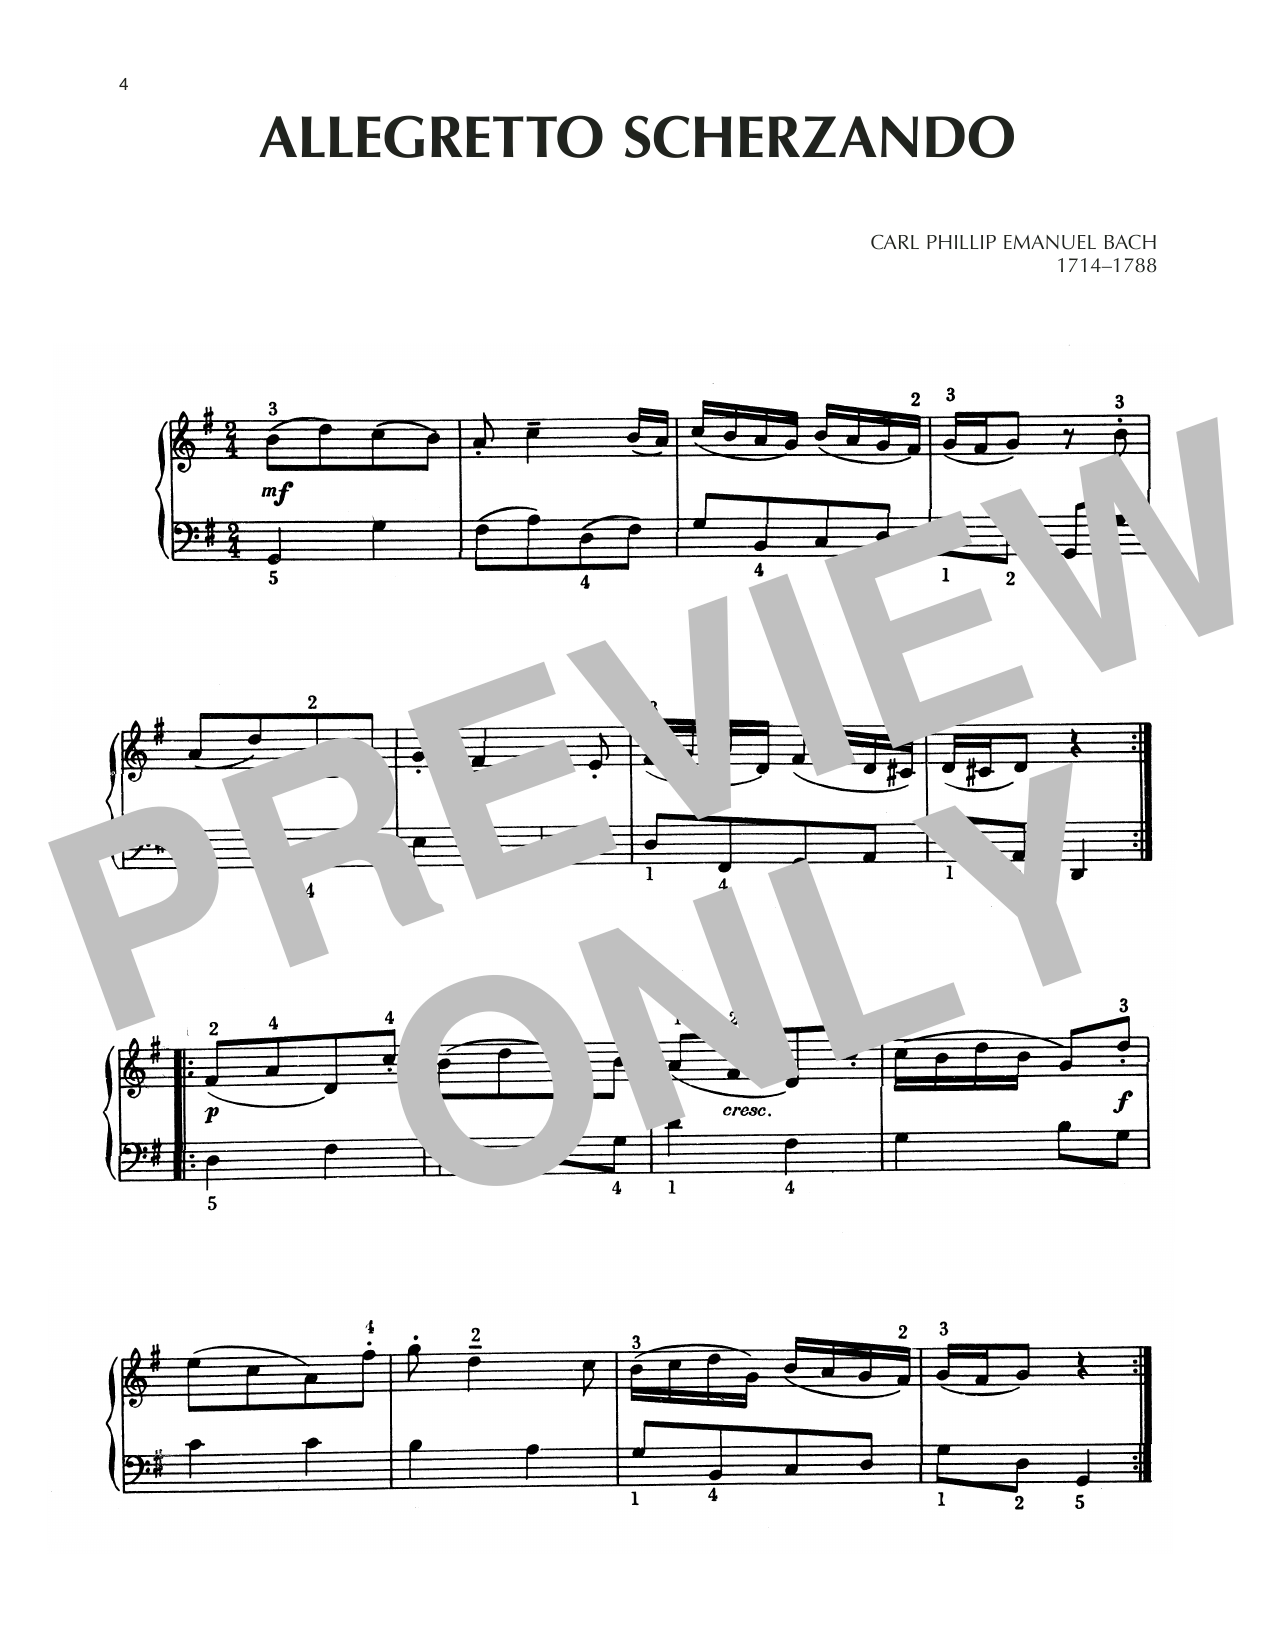 Carl Philipp Emanuel Bach Allegretto Scherzando Sheet Music Notes & Chords for Piano Solo - Download or Print PDF